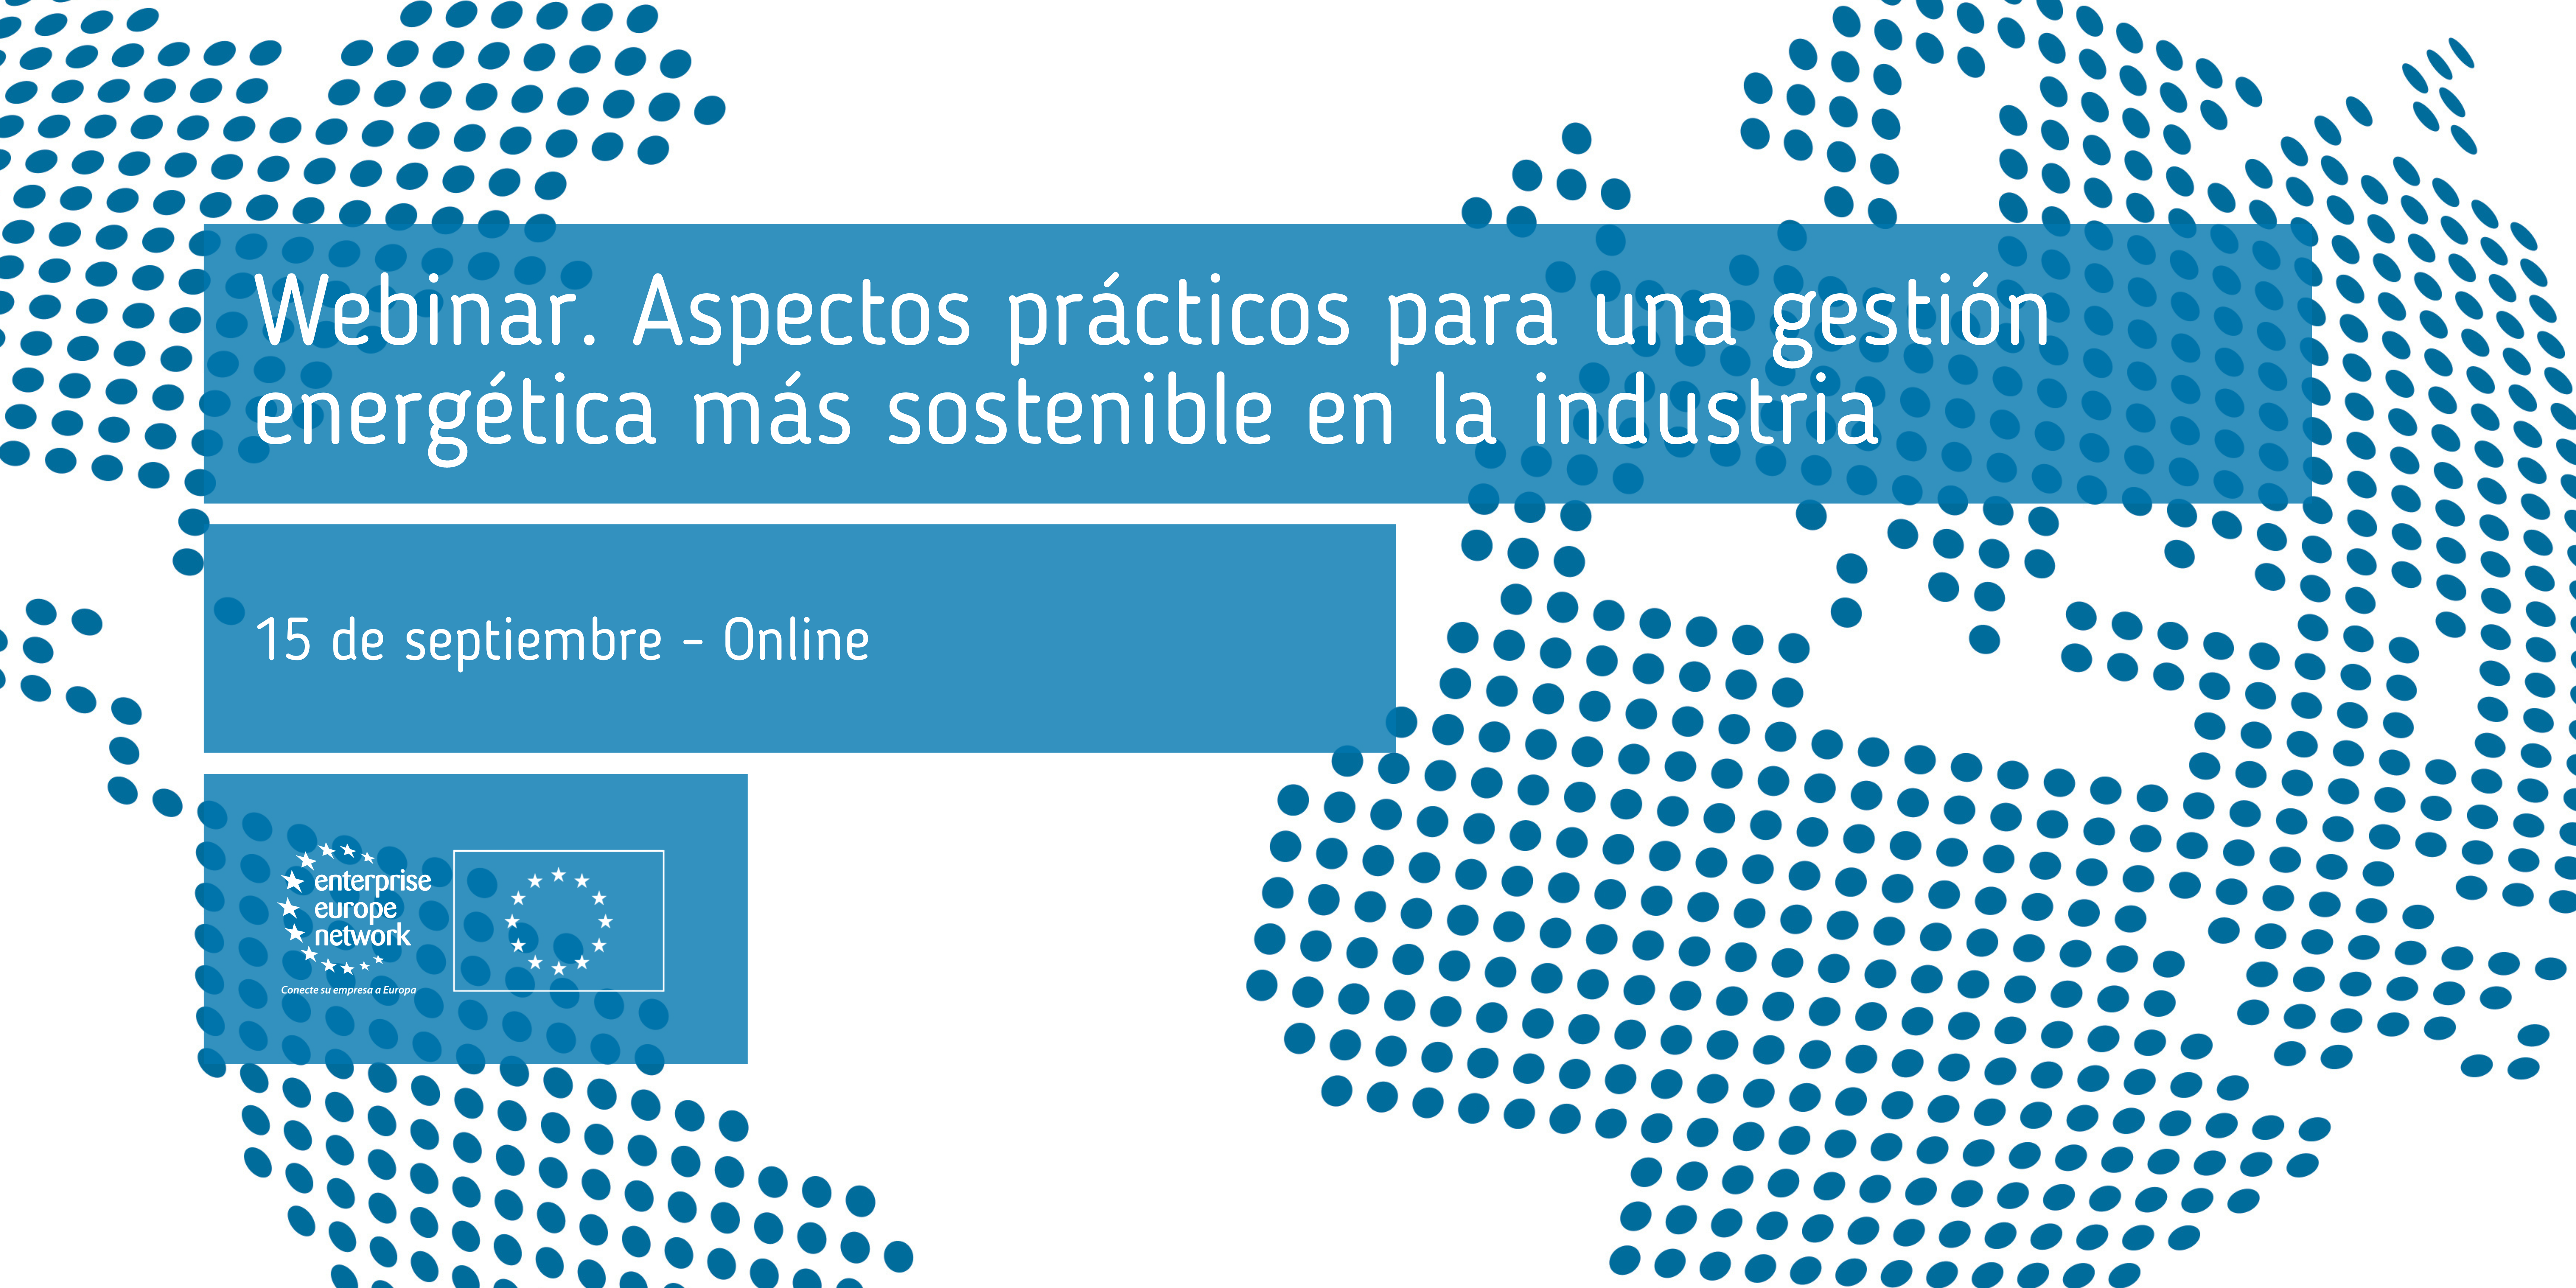 Webinar_Aspectos_prácticos_para_una_gestión_energética_más_sostenible_en_la_industria